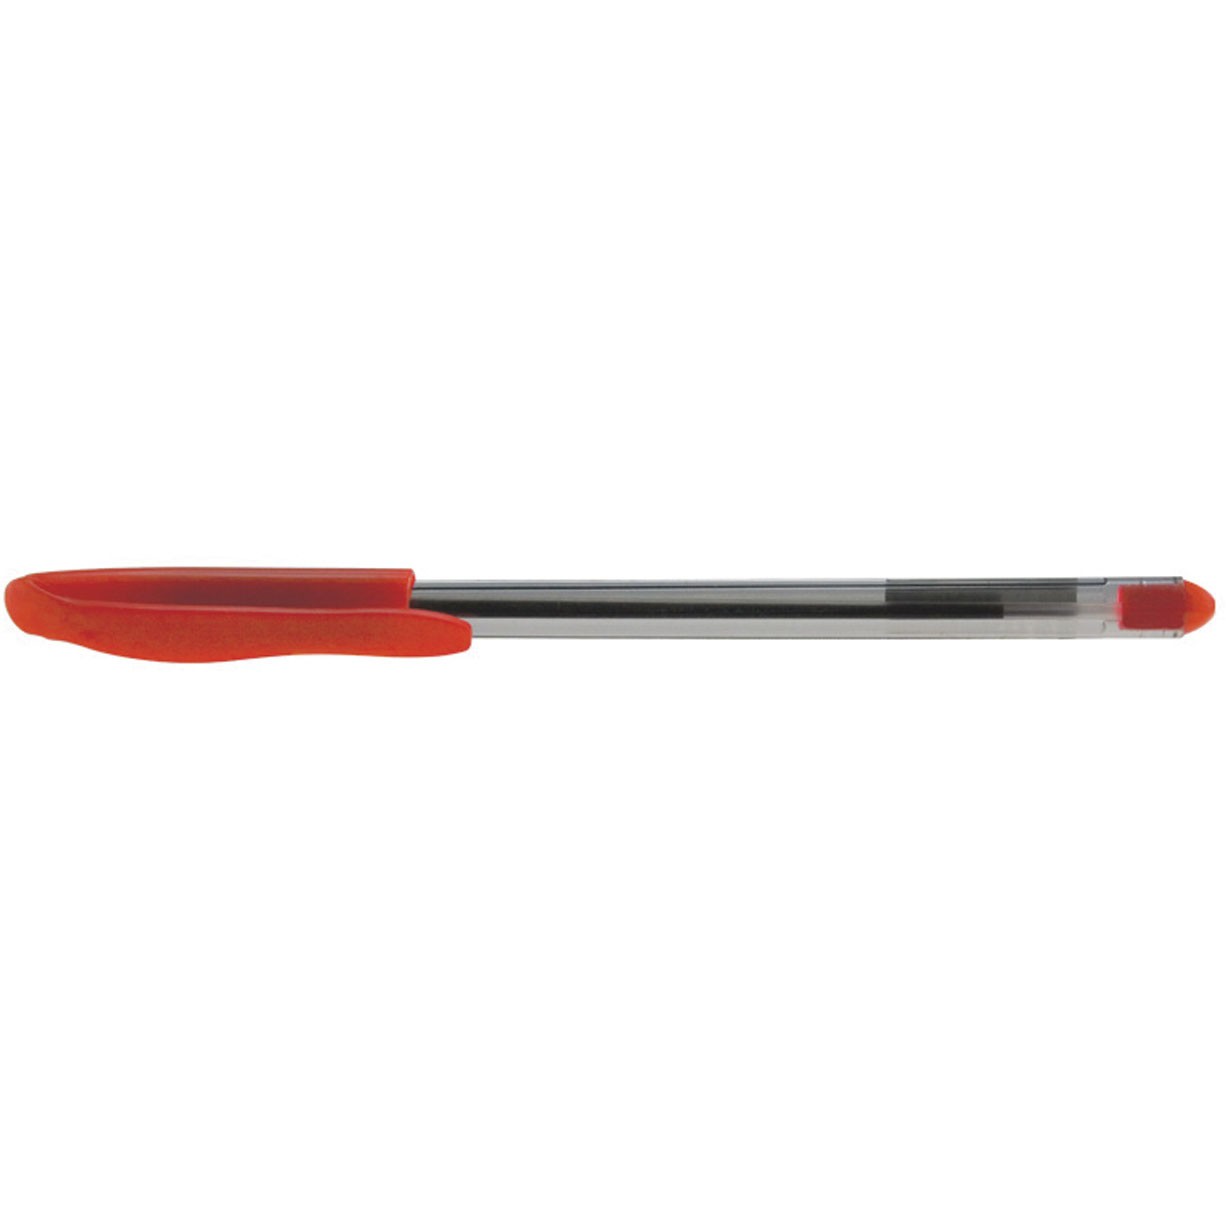 BNT Generic kuglepen med 1,0 mm spids i farven rød